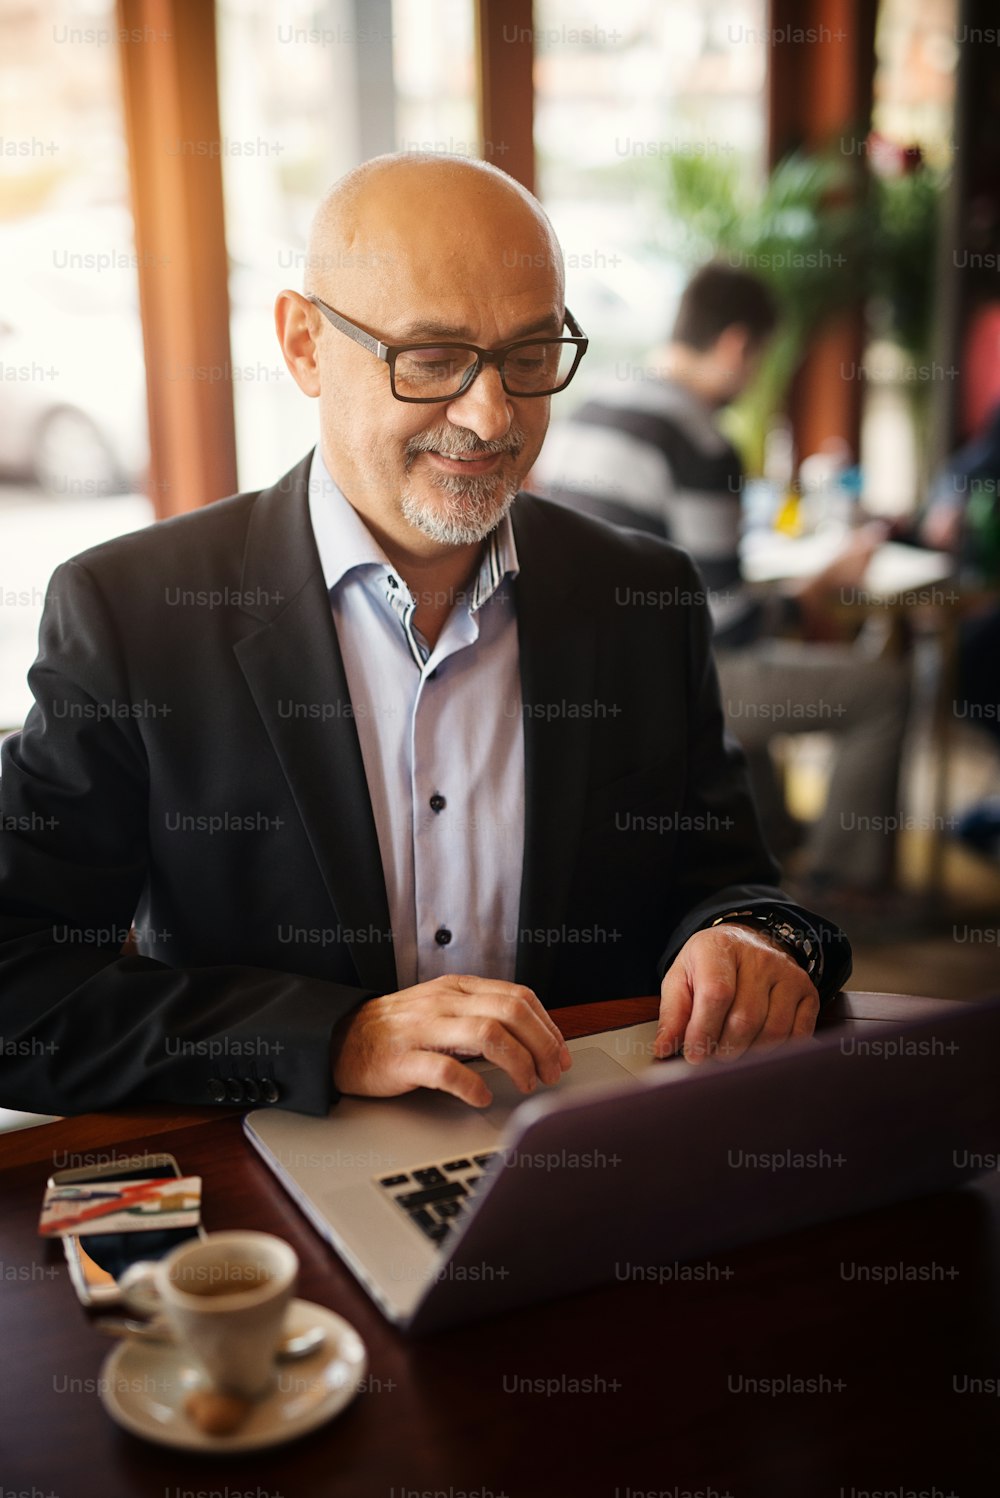 Empresário maduro e feliz está satisfeito com o que vê em seu laptop enquanto está sentado em uma cafeteria.